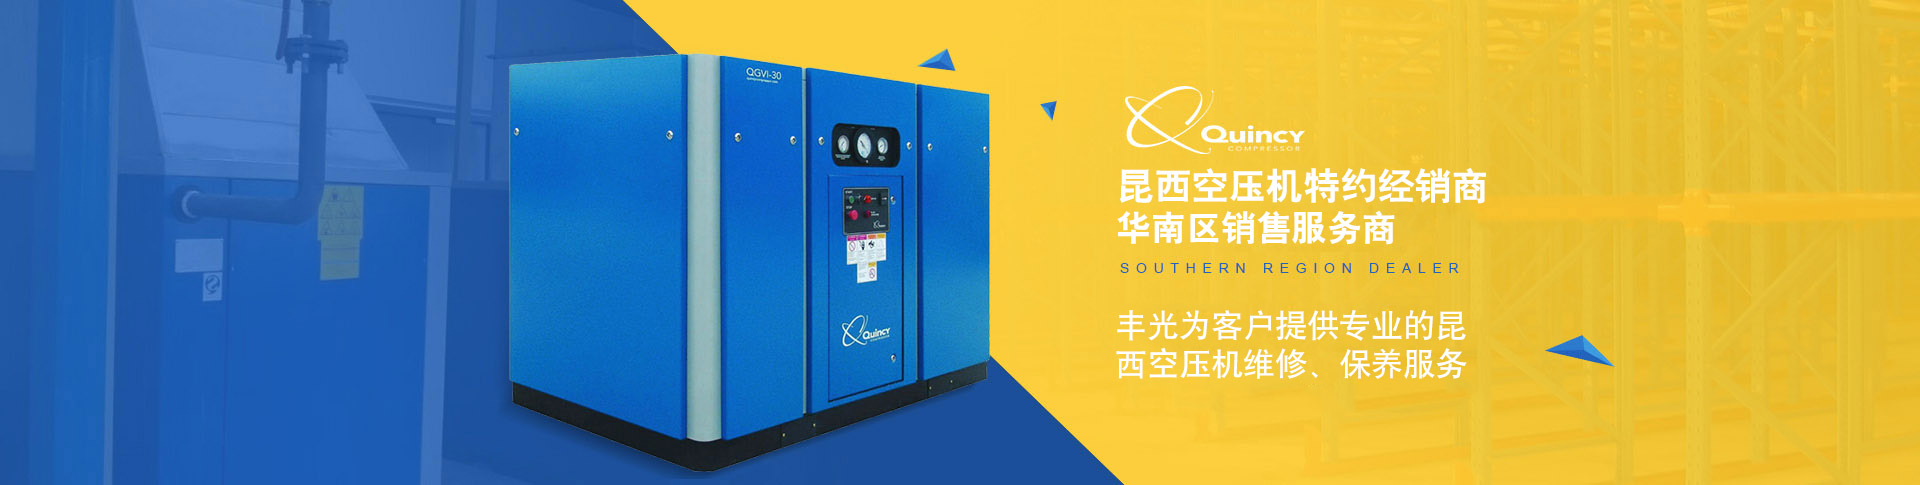 东莞丰光空压机为您提供广州永磁变频空压机、东莞两级压缩机